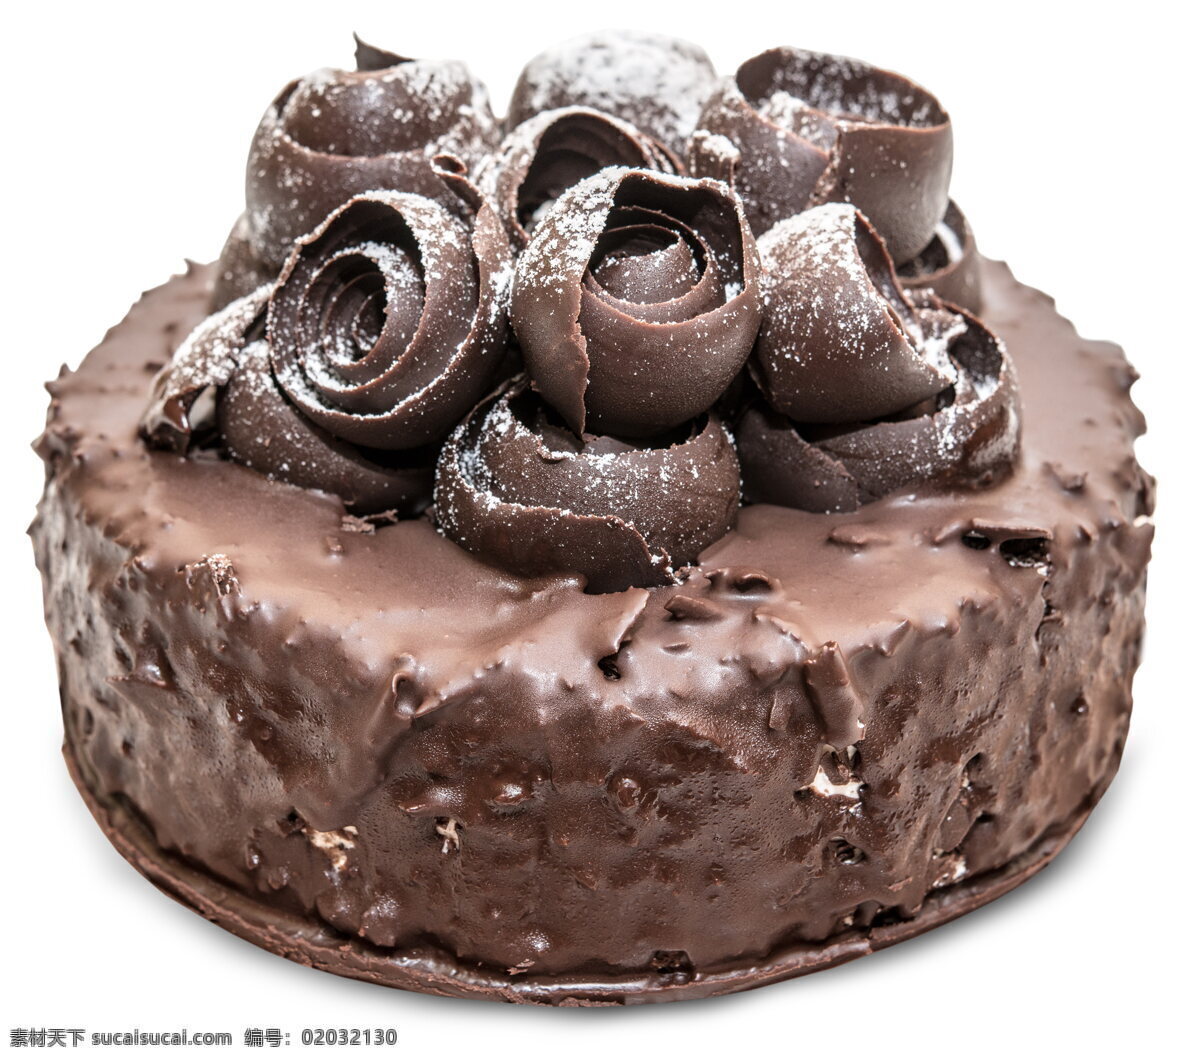 美味 巧克力 蛋糕 裱花蛋糕 韩花蛋糕 糕点 点心 甜点